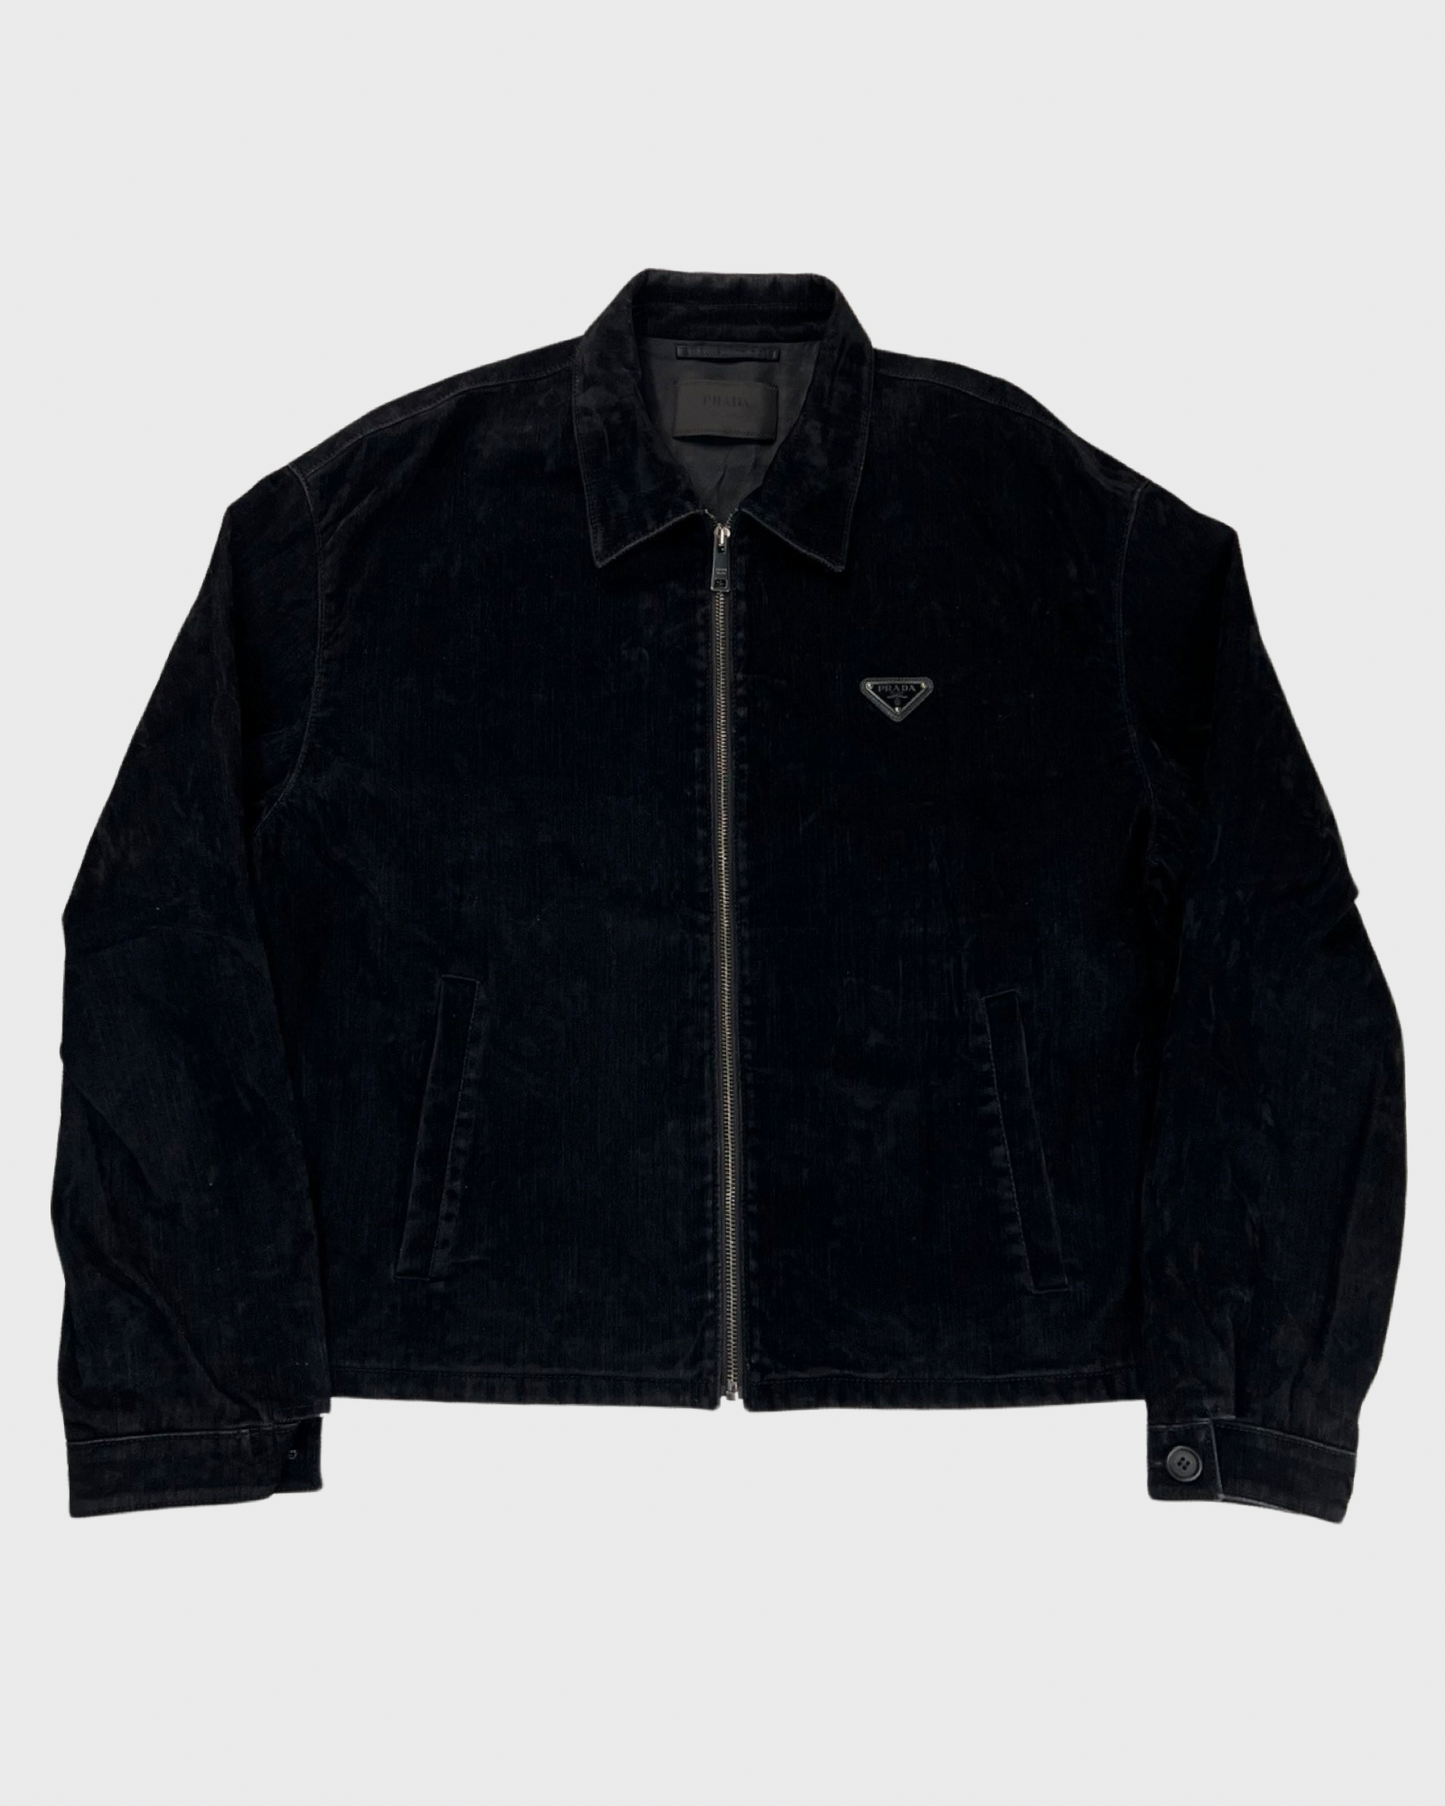 Prada triangle logo Black velvet  workwear Jacket SZ:XL